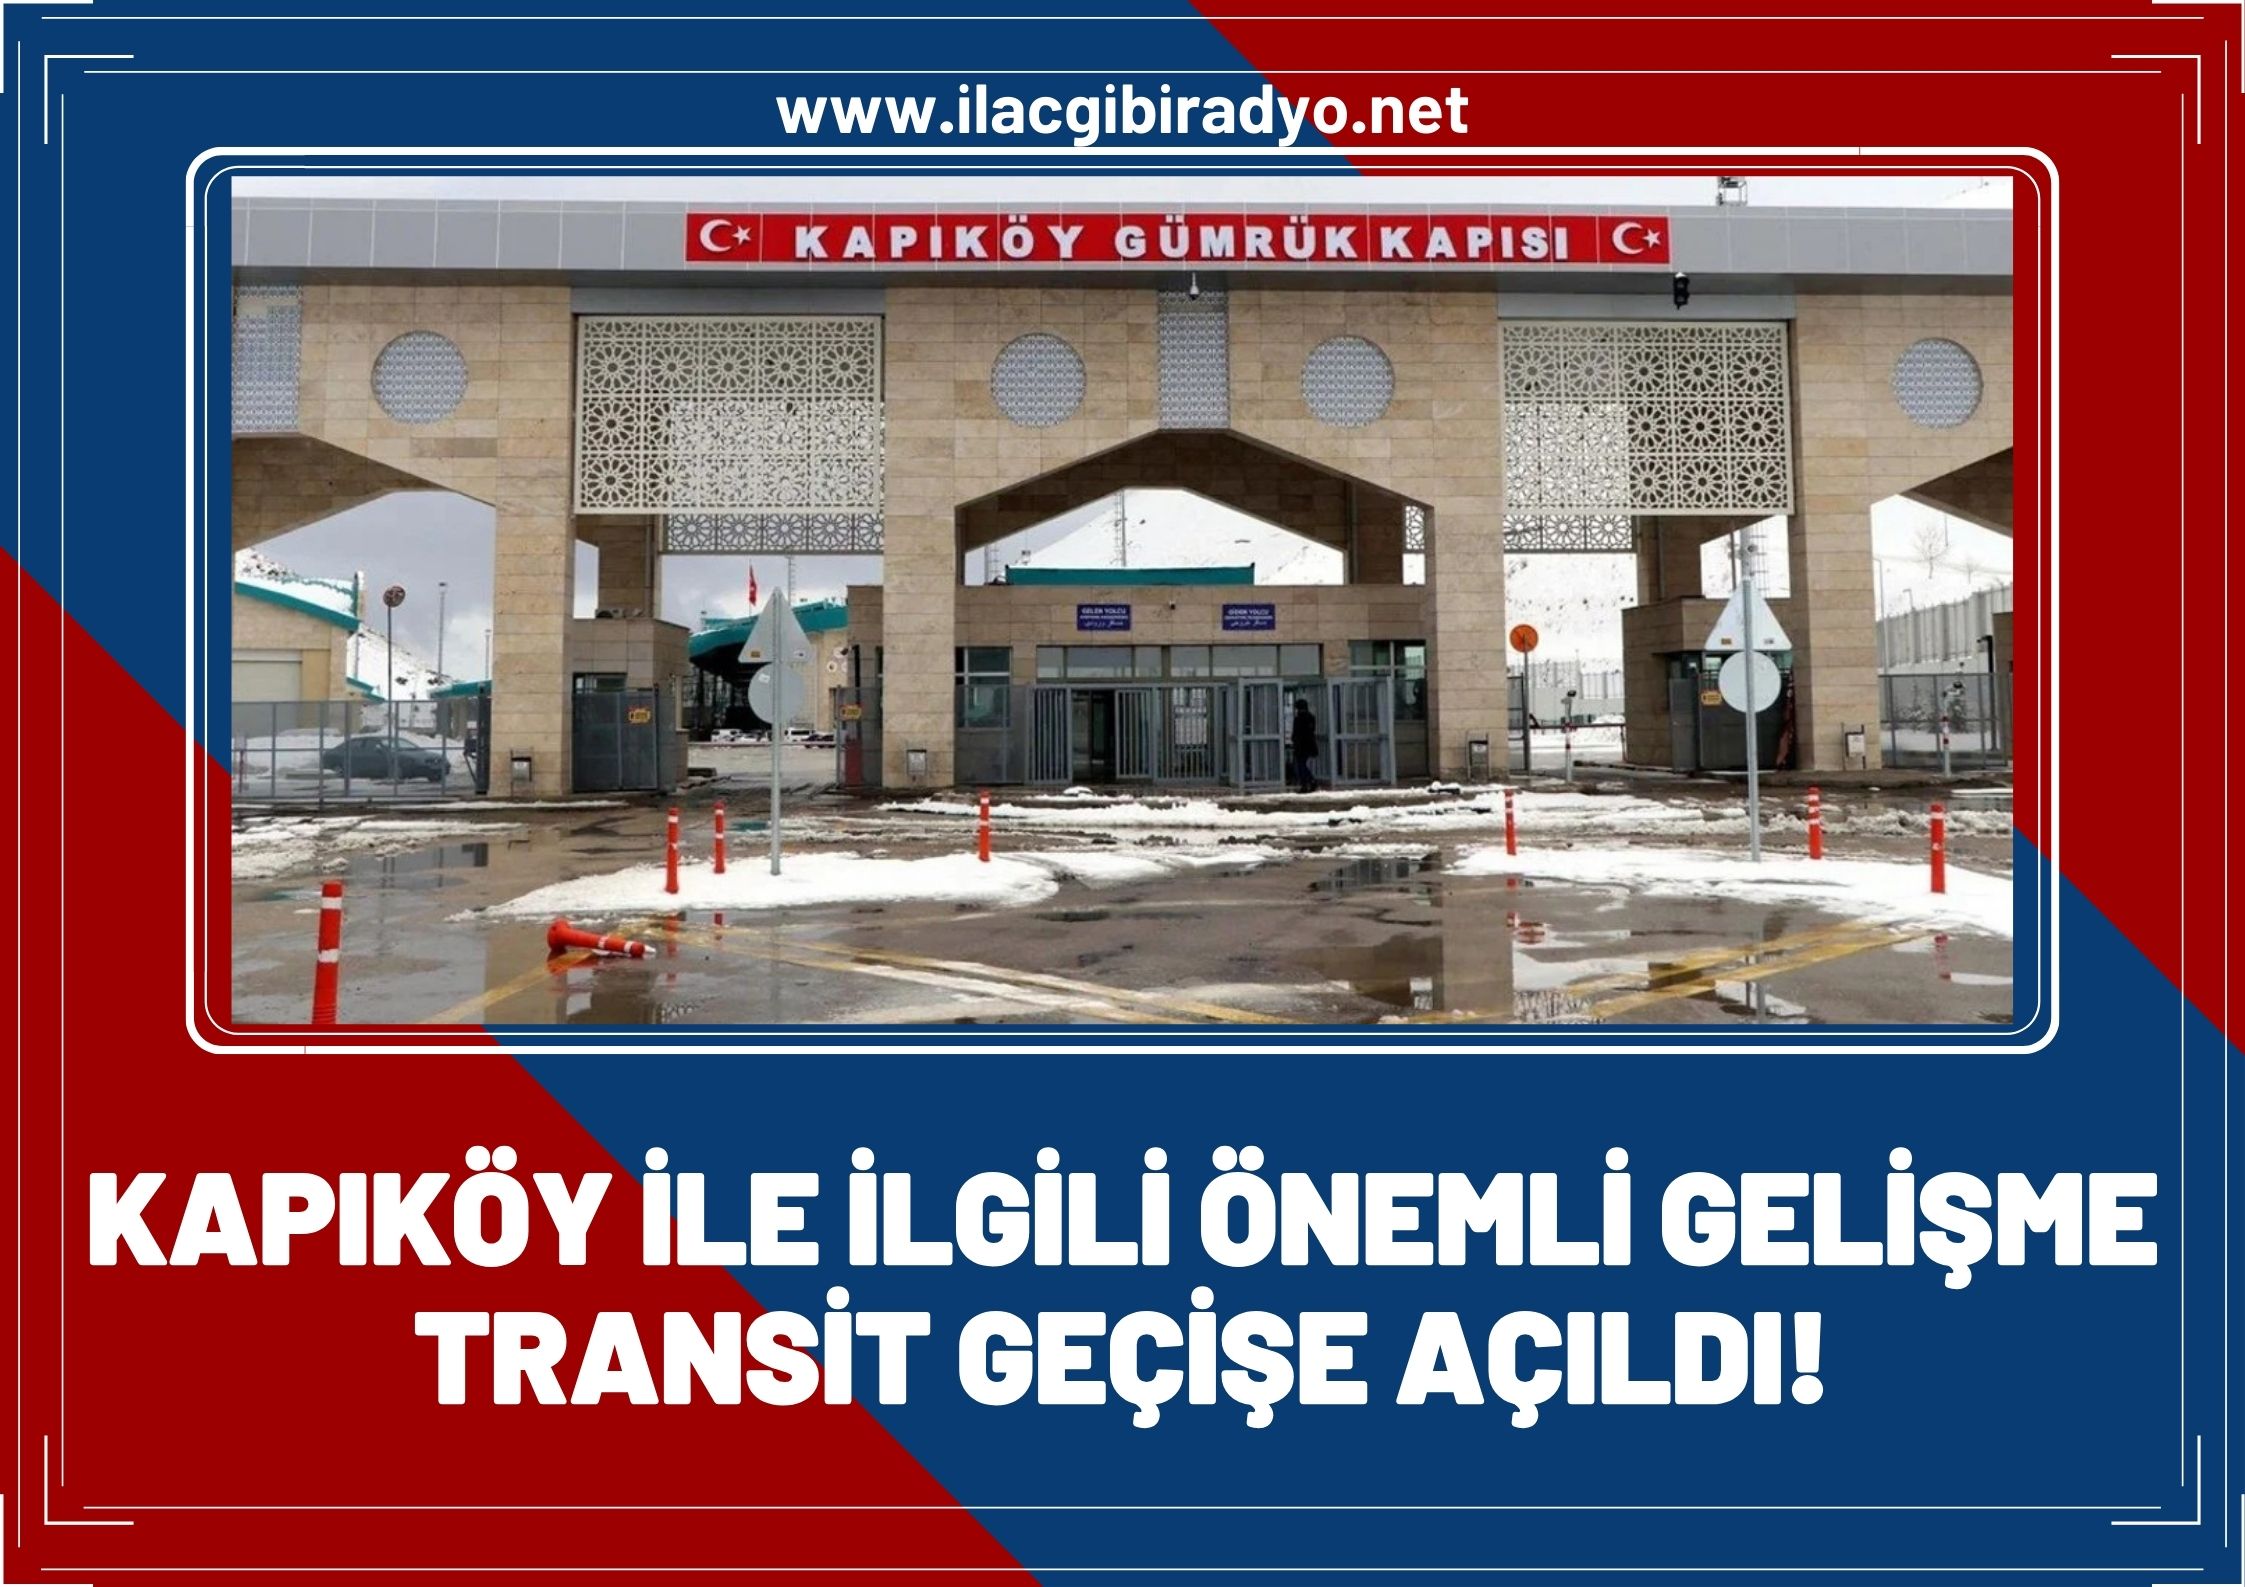 Kapıköy ile ilgili önemli gelişme: Transit geçişlere açıldı!